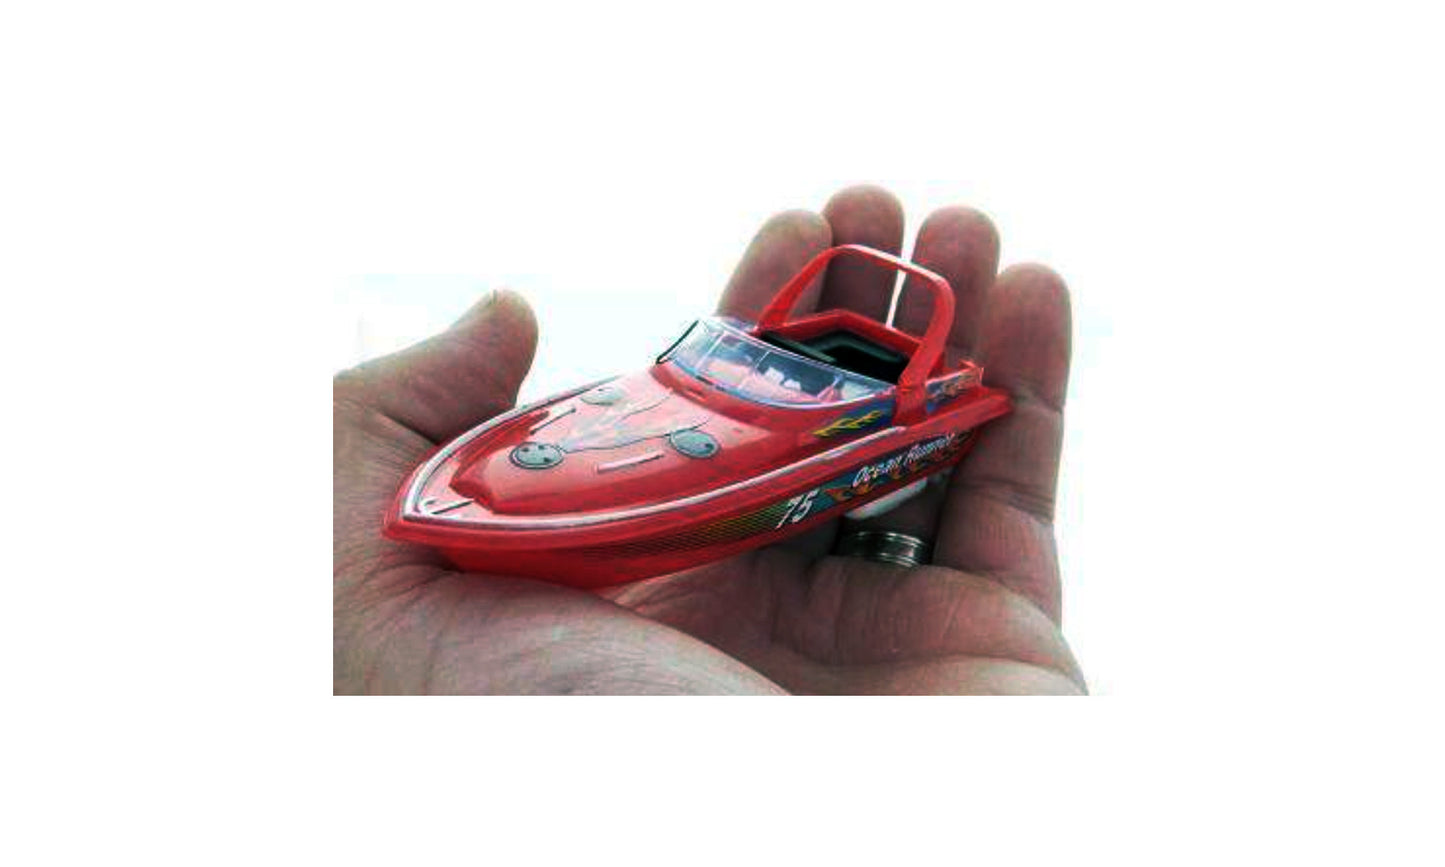 Mini RC Boat Case - 48